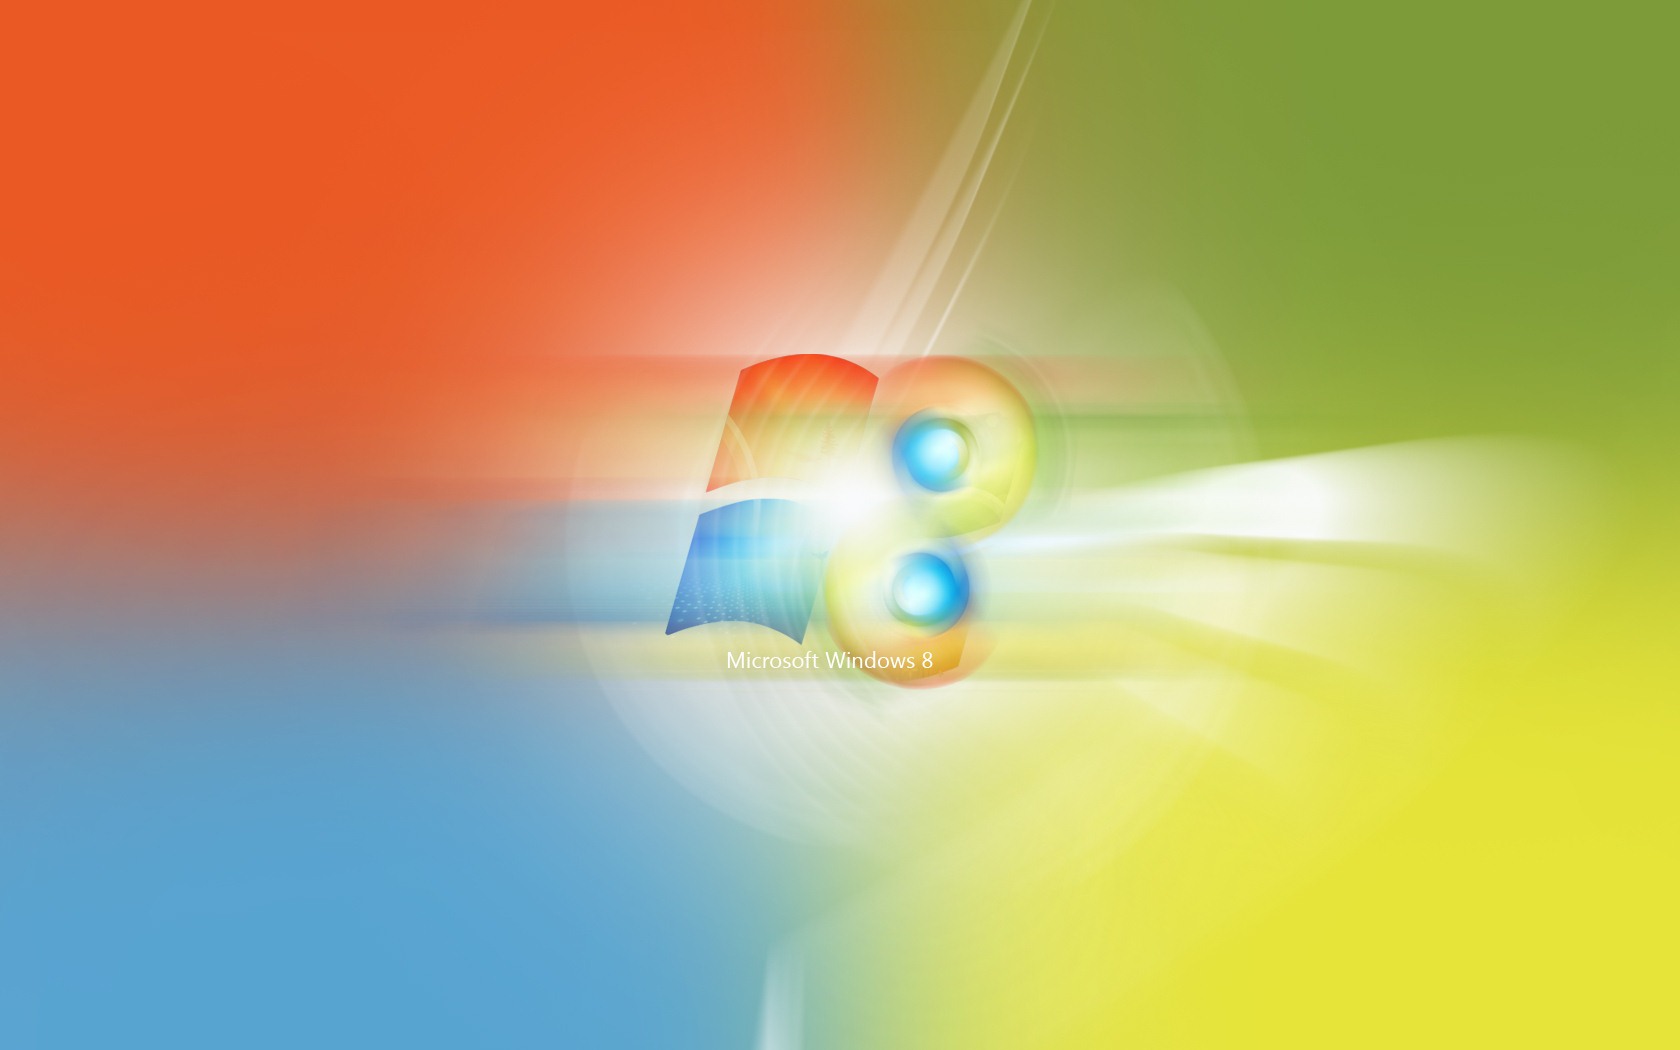 Windows 8 theme wallpaper (2) #4 - 1680x1050